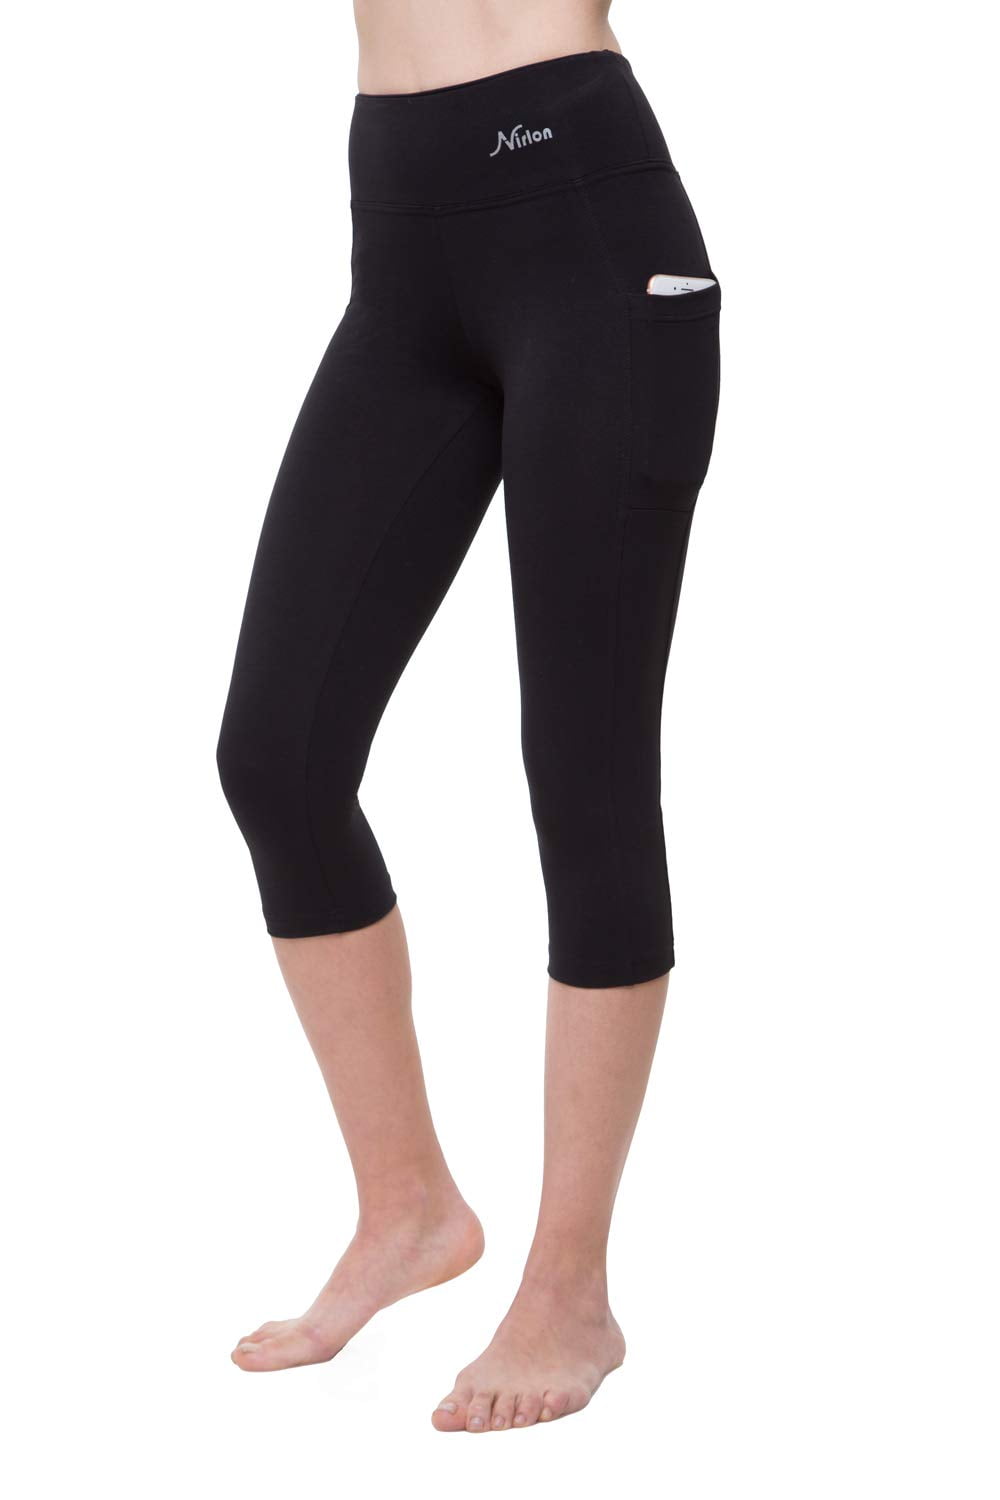 Athletic Works Women's Mid Rise Slim-Leg Capri Leggings, Sizes S